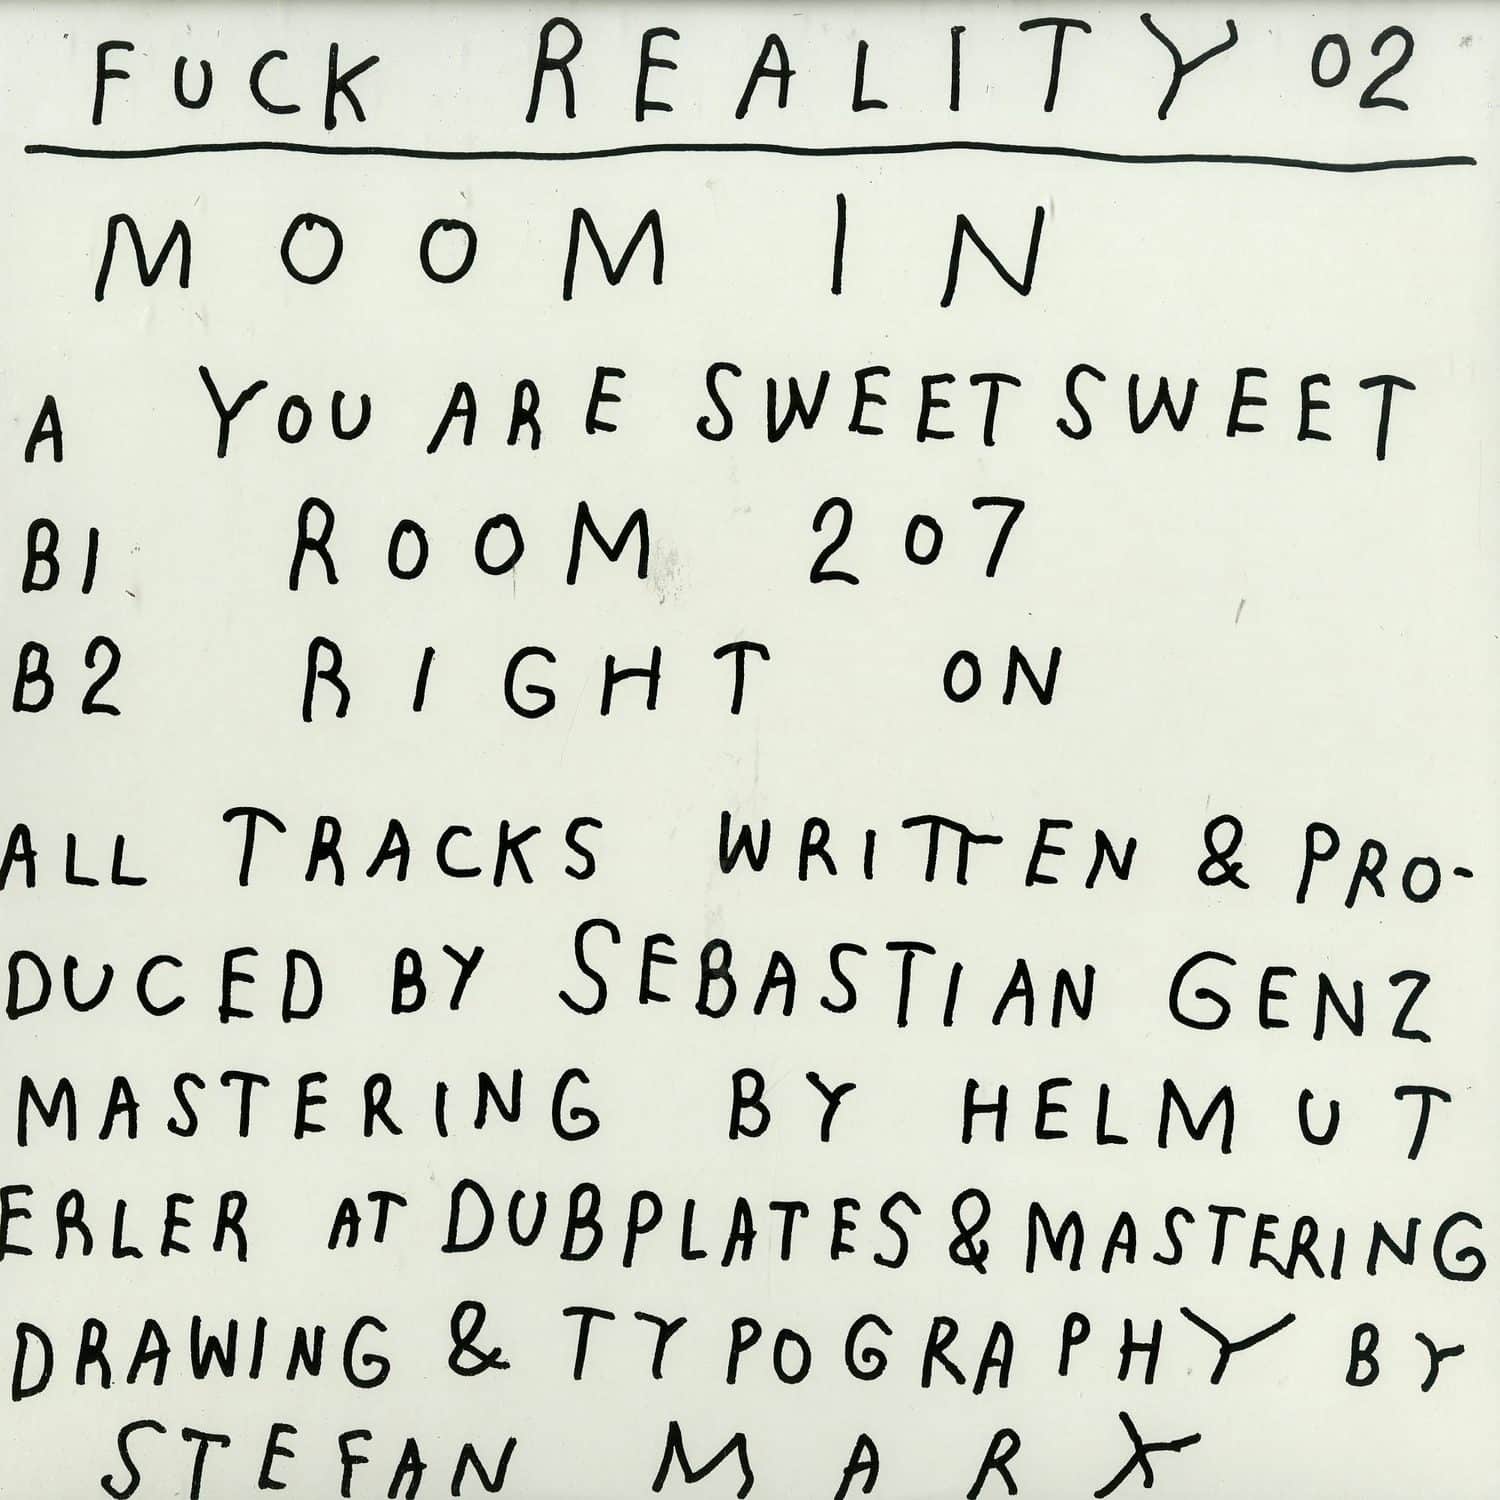 Moomin - FUCK REALITY 02